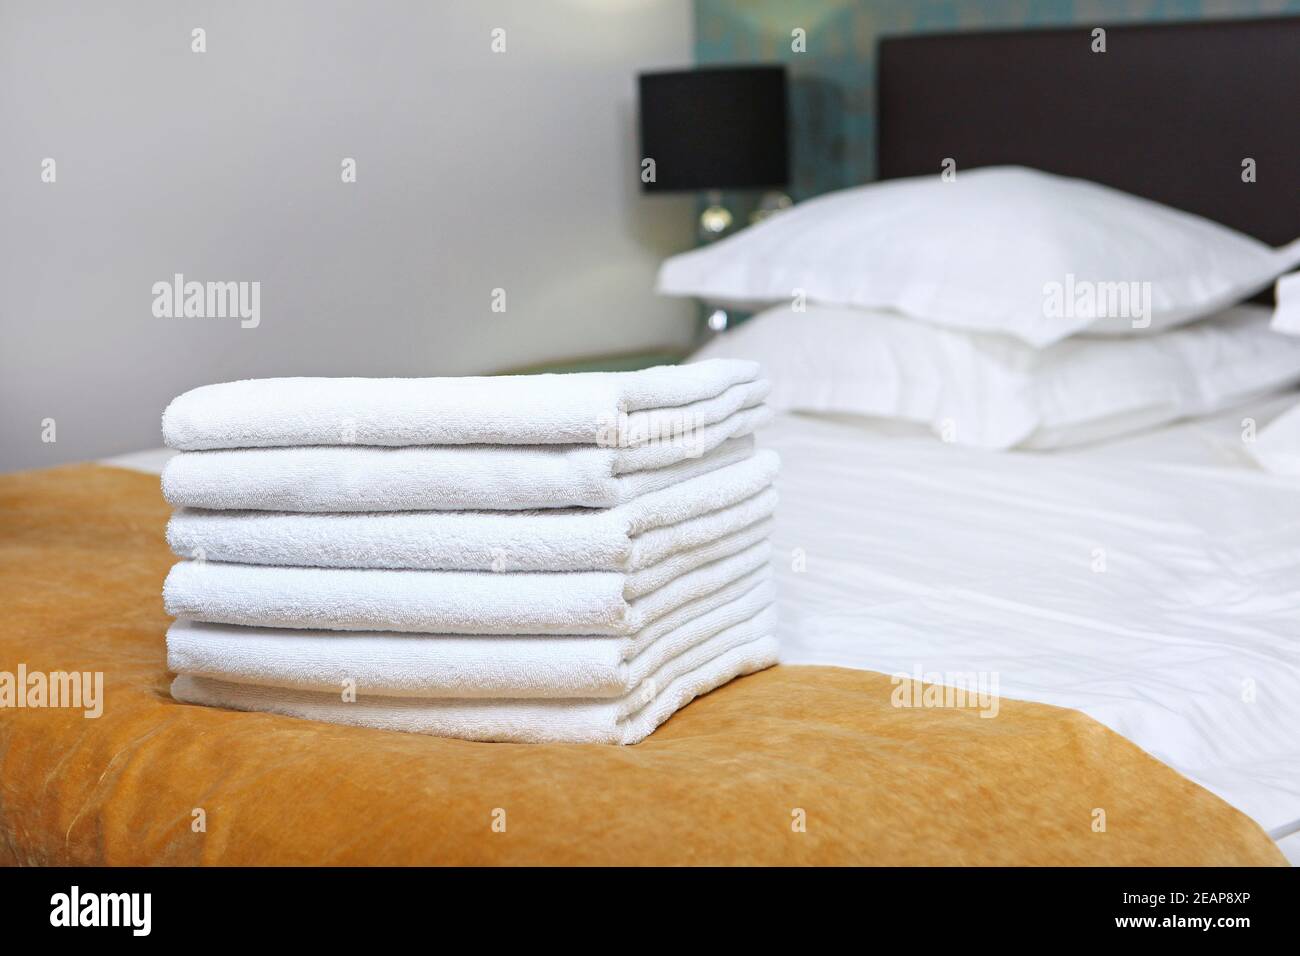 Nettoyage des chambres dans un hôtel cher. Un ensemble de serviettes propres. Articles d'hygiène. Le lit double est hors foyer. Le concept de service de qualité dans l'hôtel. Hôtellerie. Banque D'Images